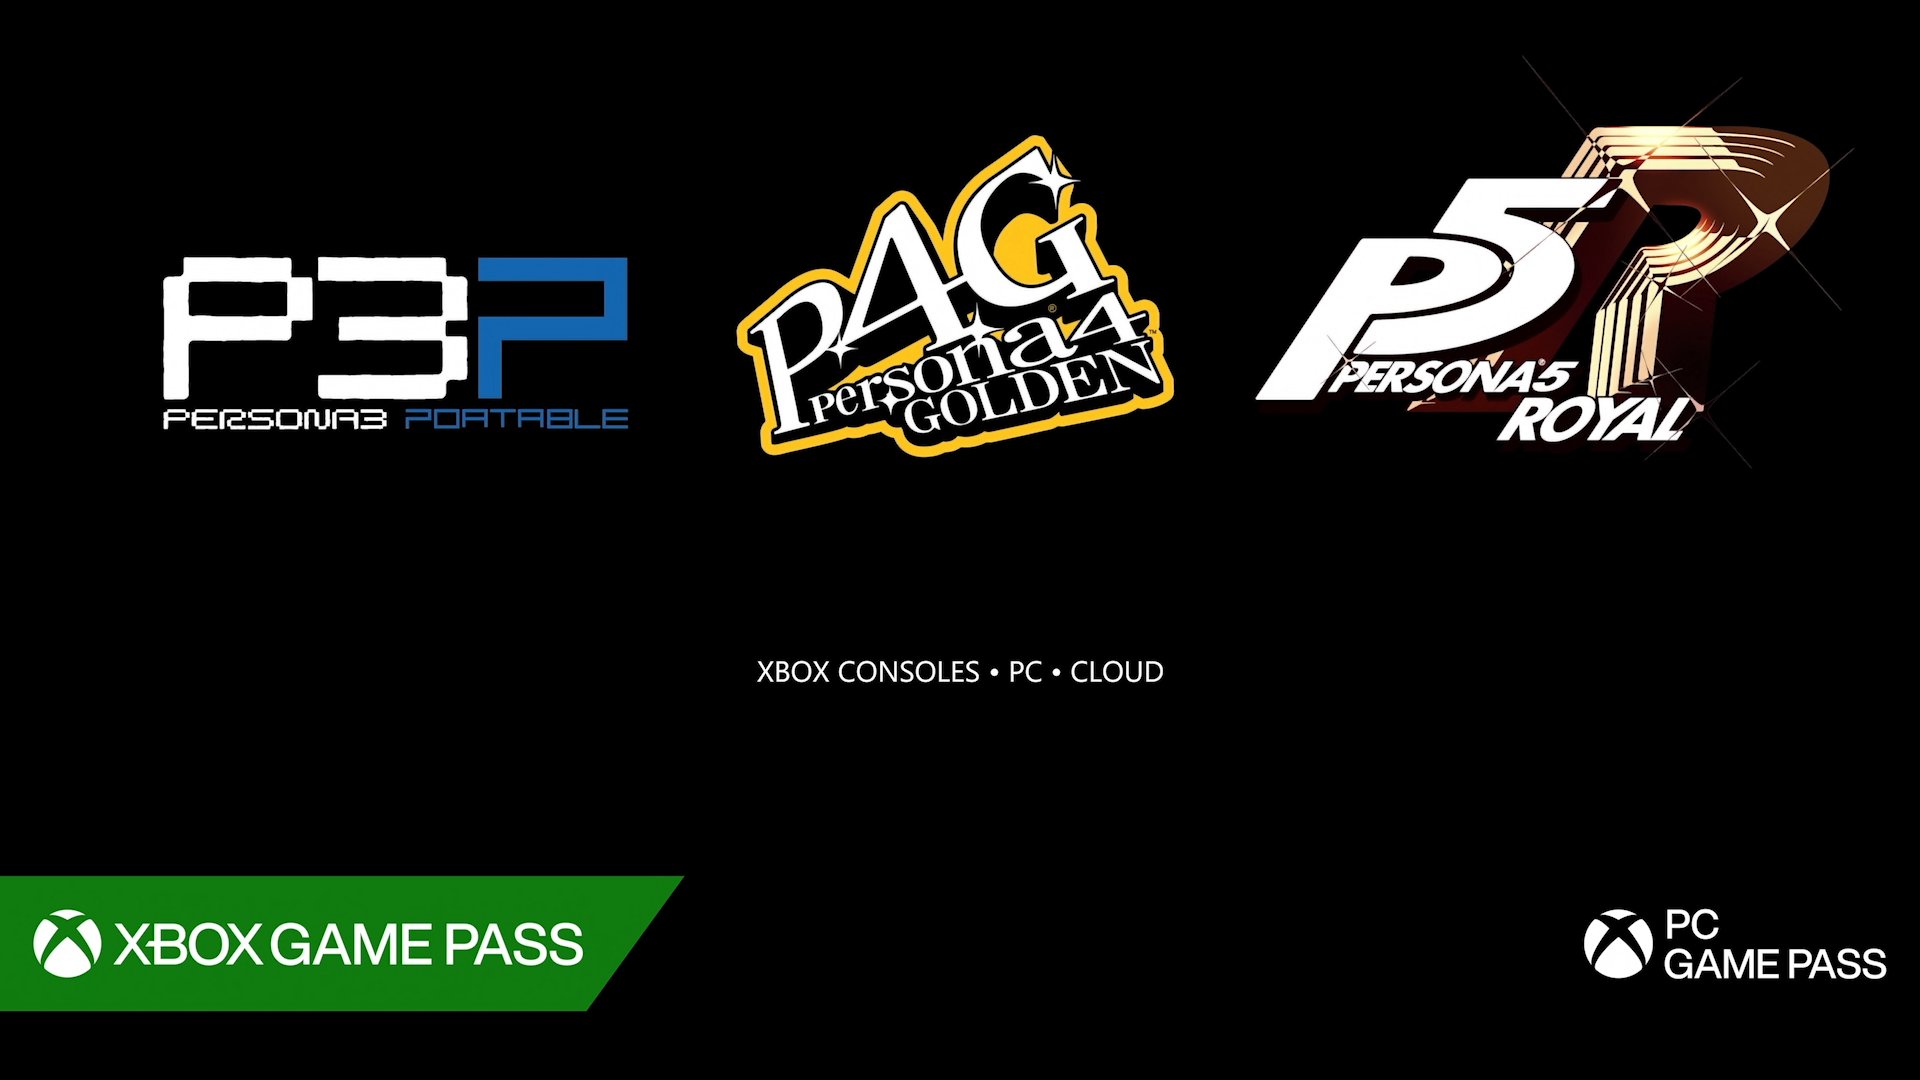 【PC游戏】Xbox发布会汇总:《星空》实机,《丝之歌》有望,《守望2》发布-第20张